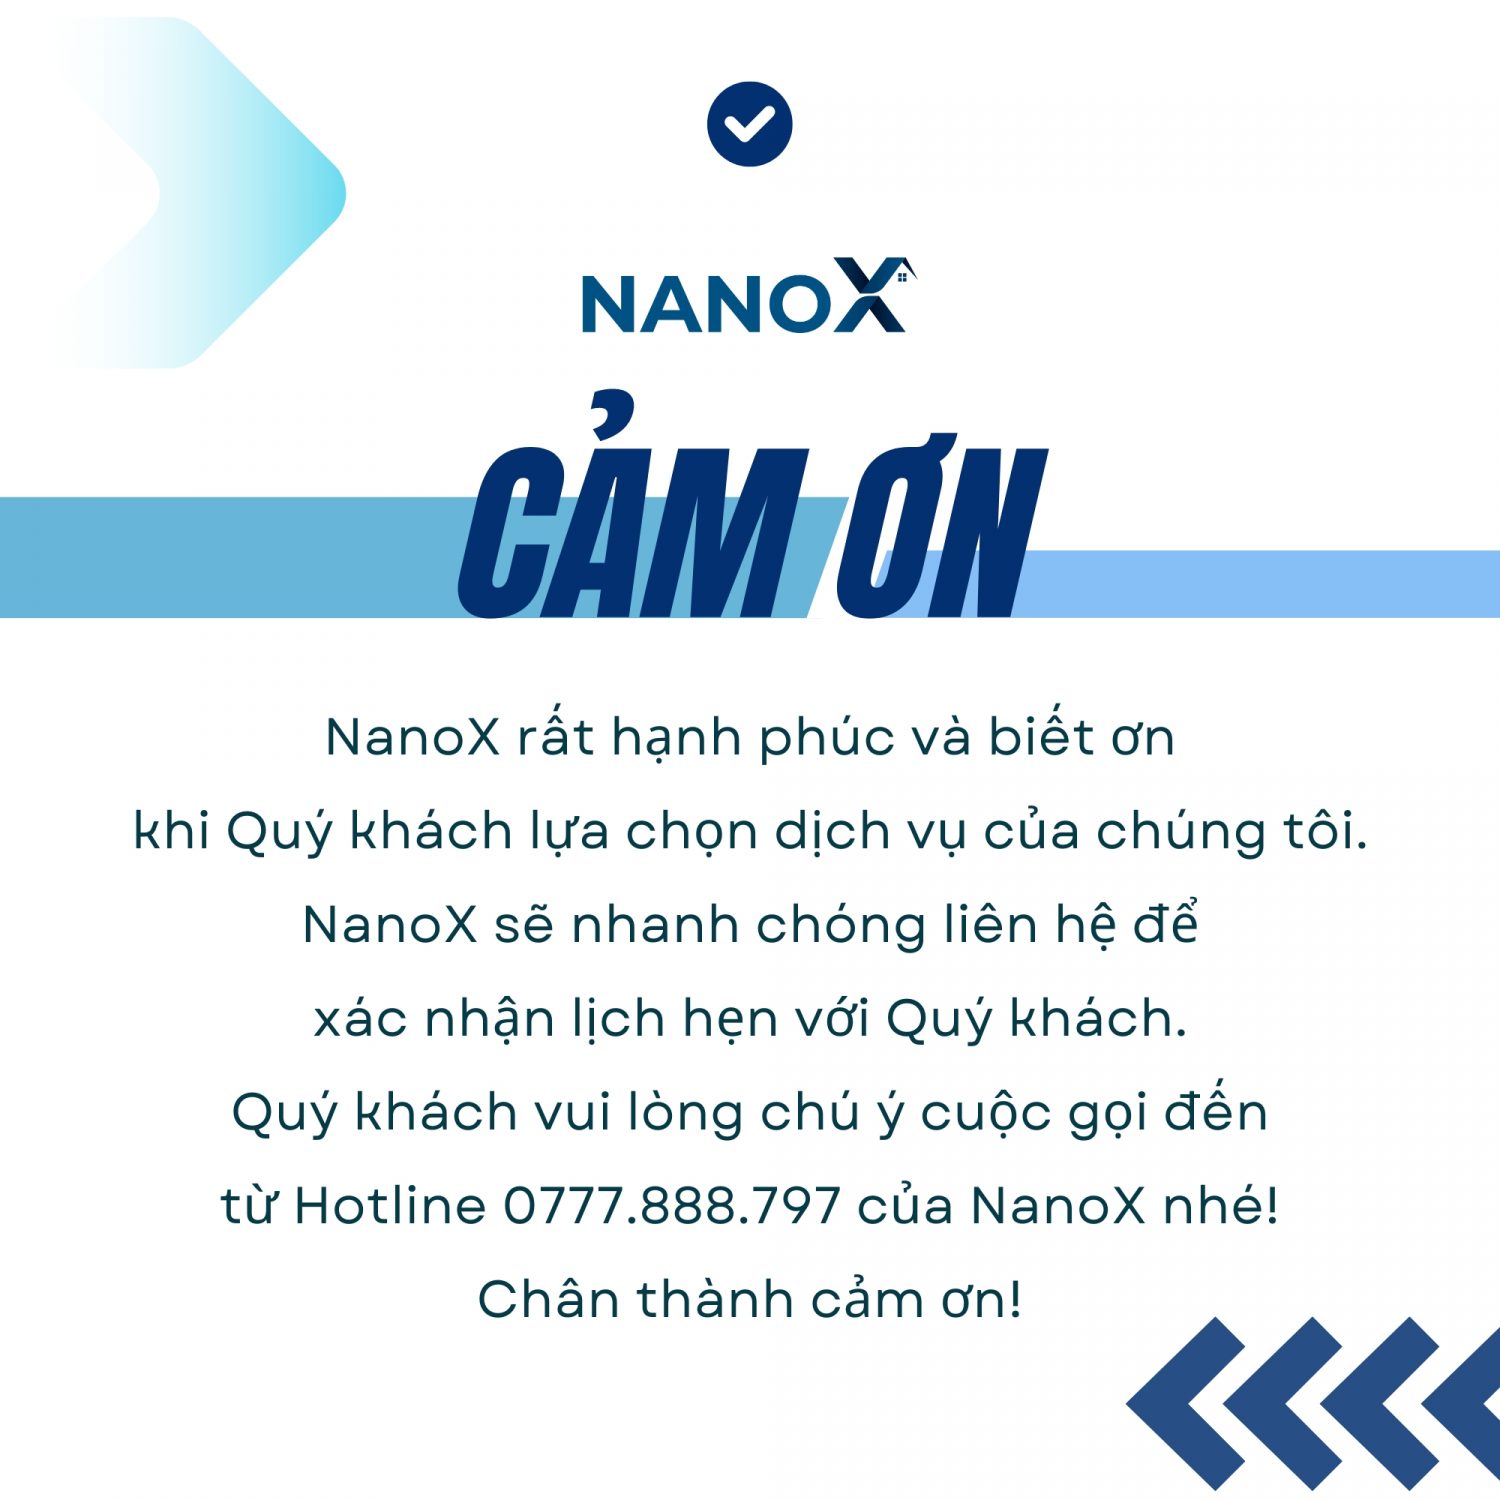 NanoX cảm ơn